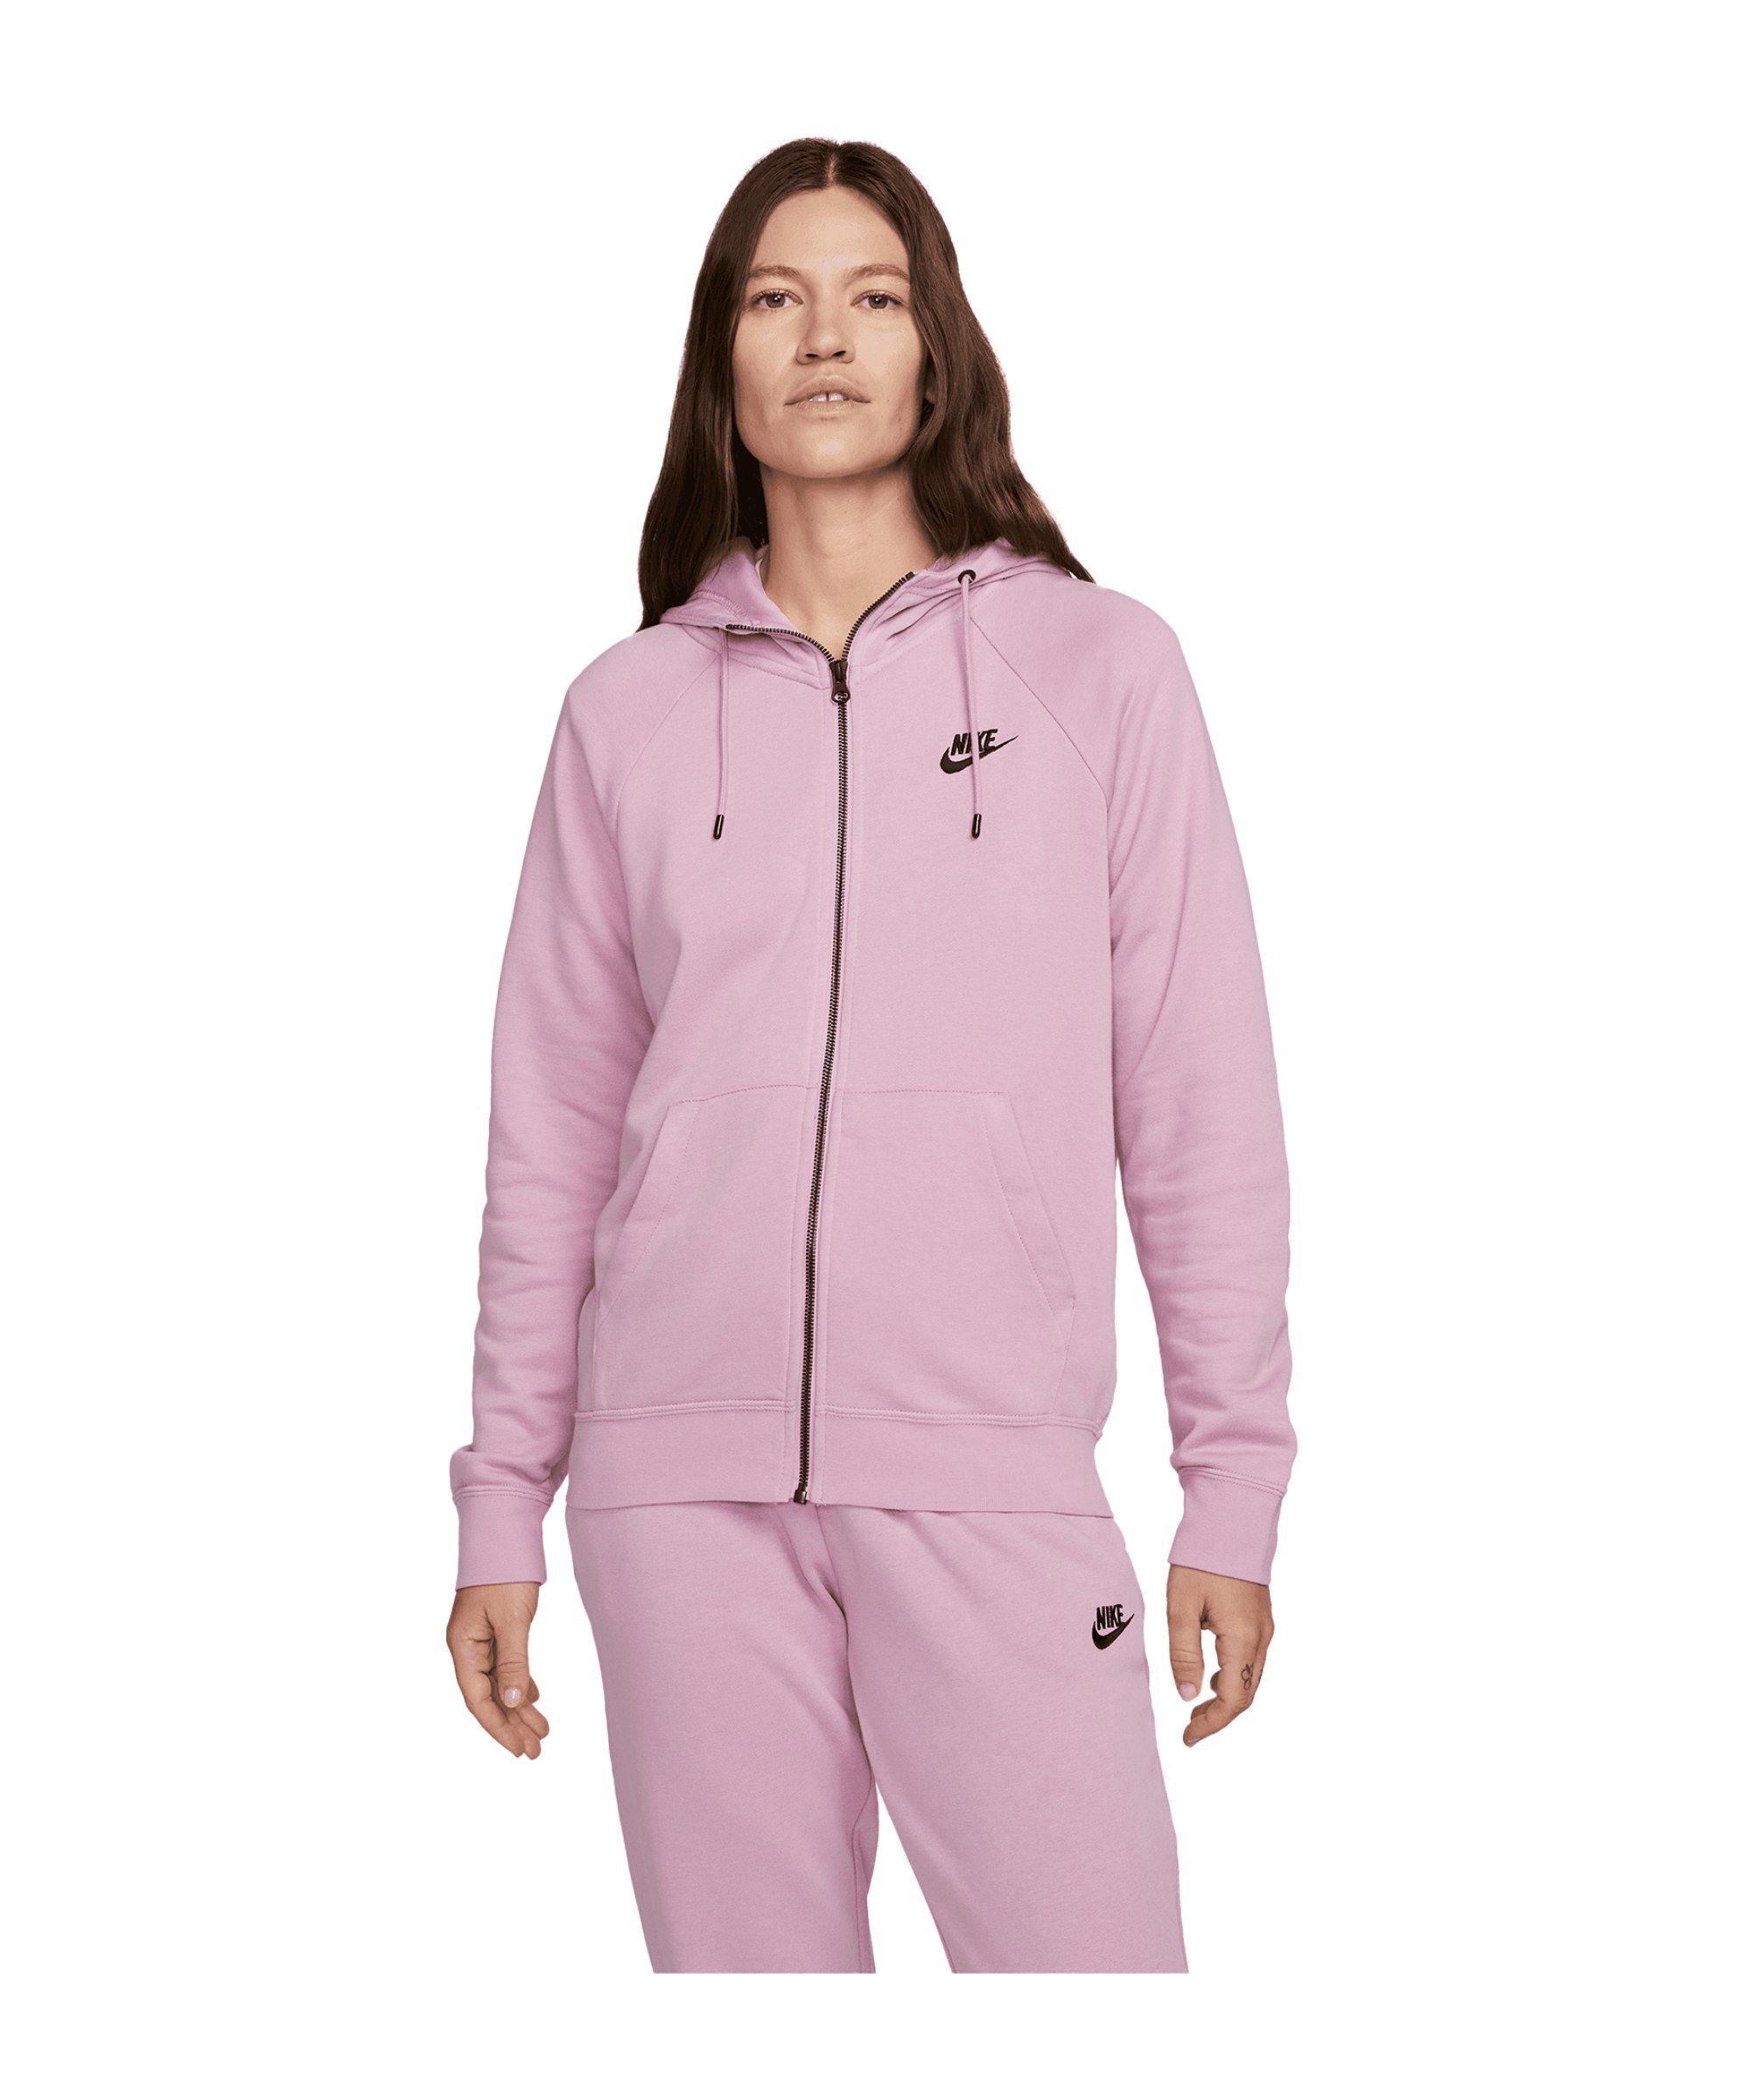 Nike Essentials Fleece Kapuzenjacke Damen F522 - rosa